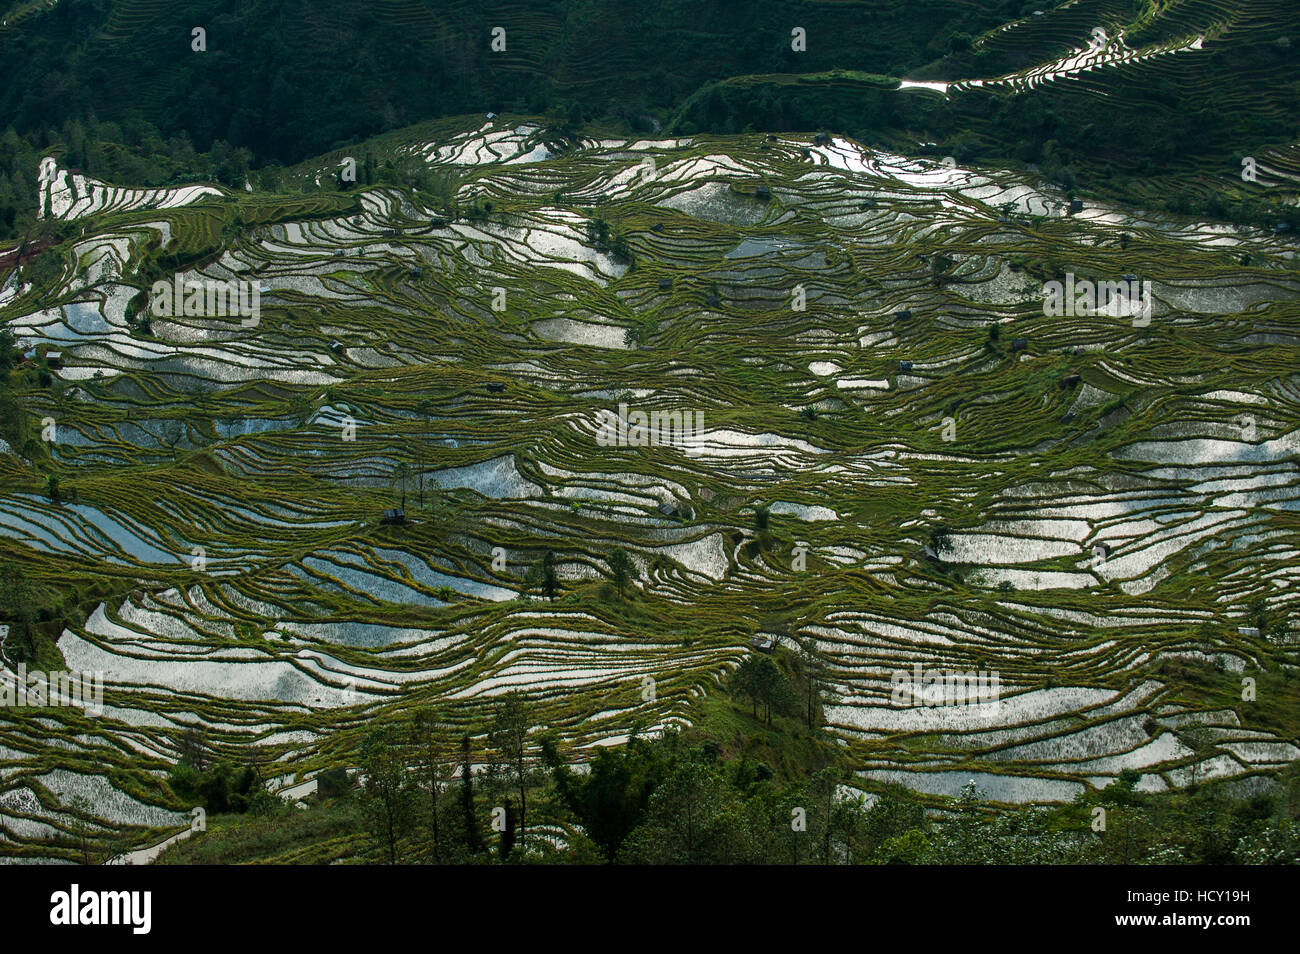 Realizzato nel corso di centinaia di anni dall'Hani, queste terrazze coprono un area di circa 12500 ettari, Yuanyang, nella provincia dello Yunnan in Cina Foto Stock